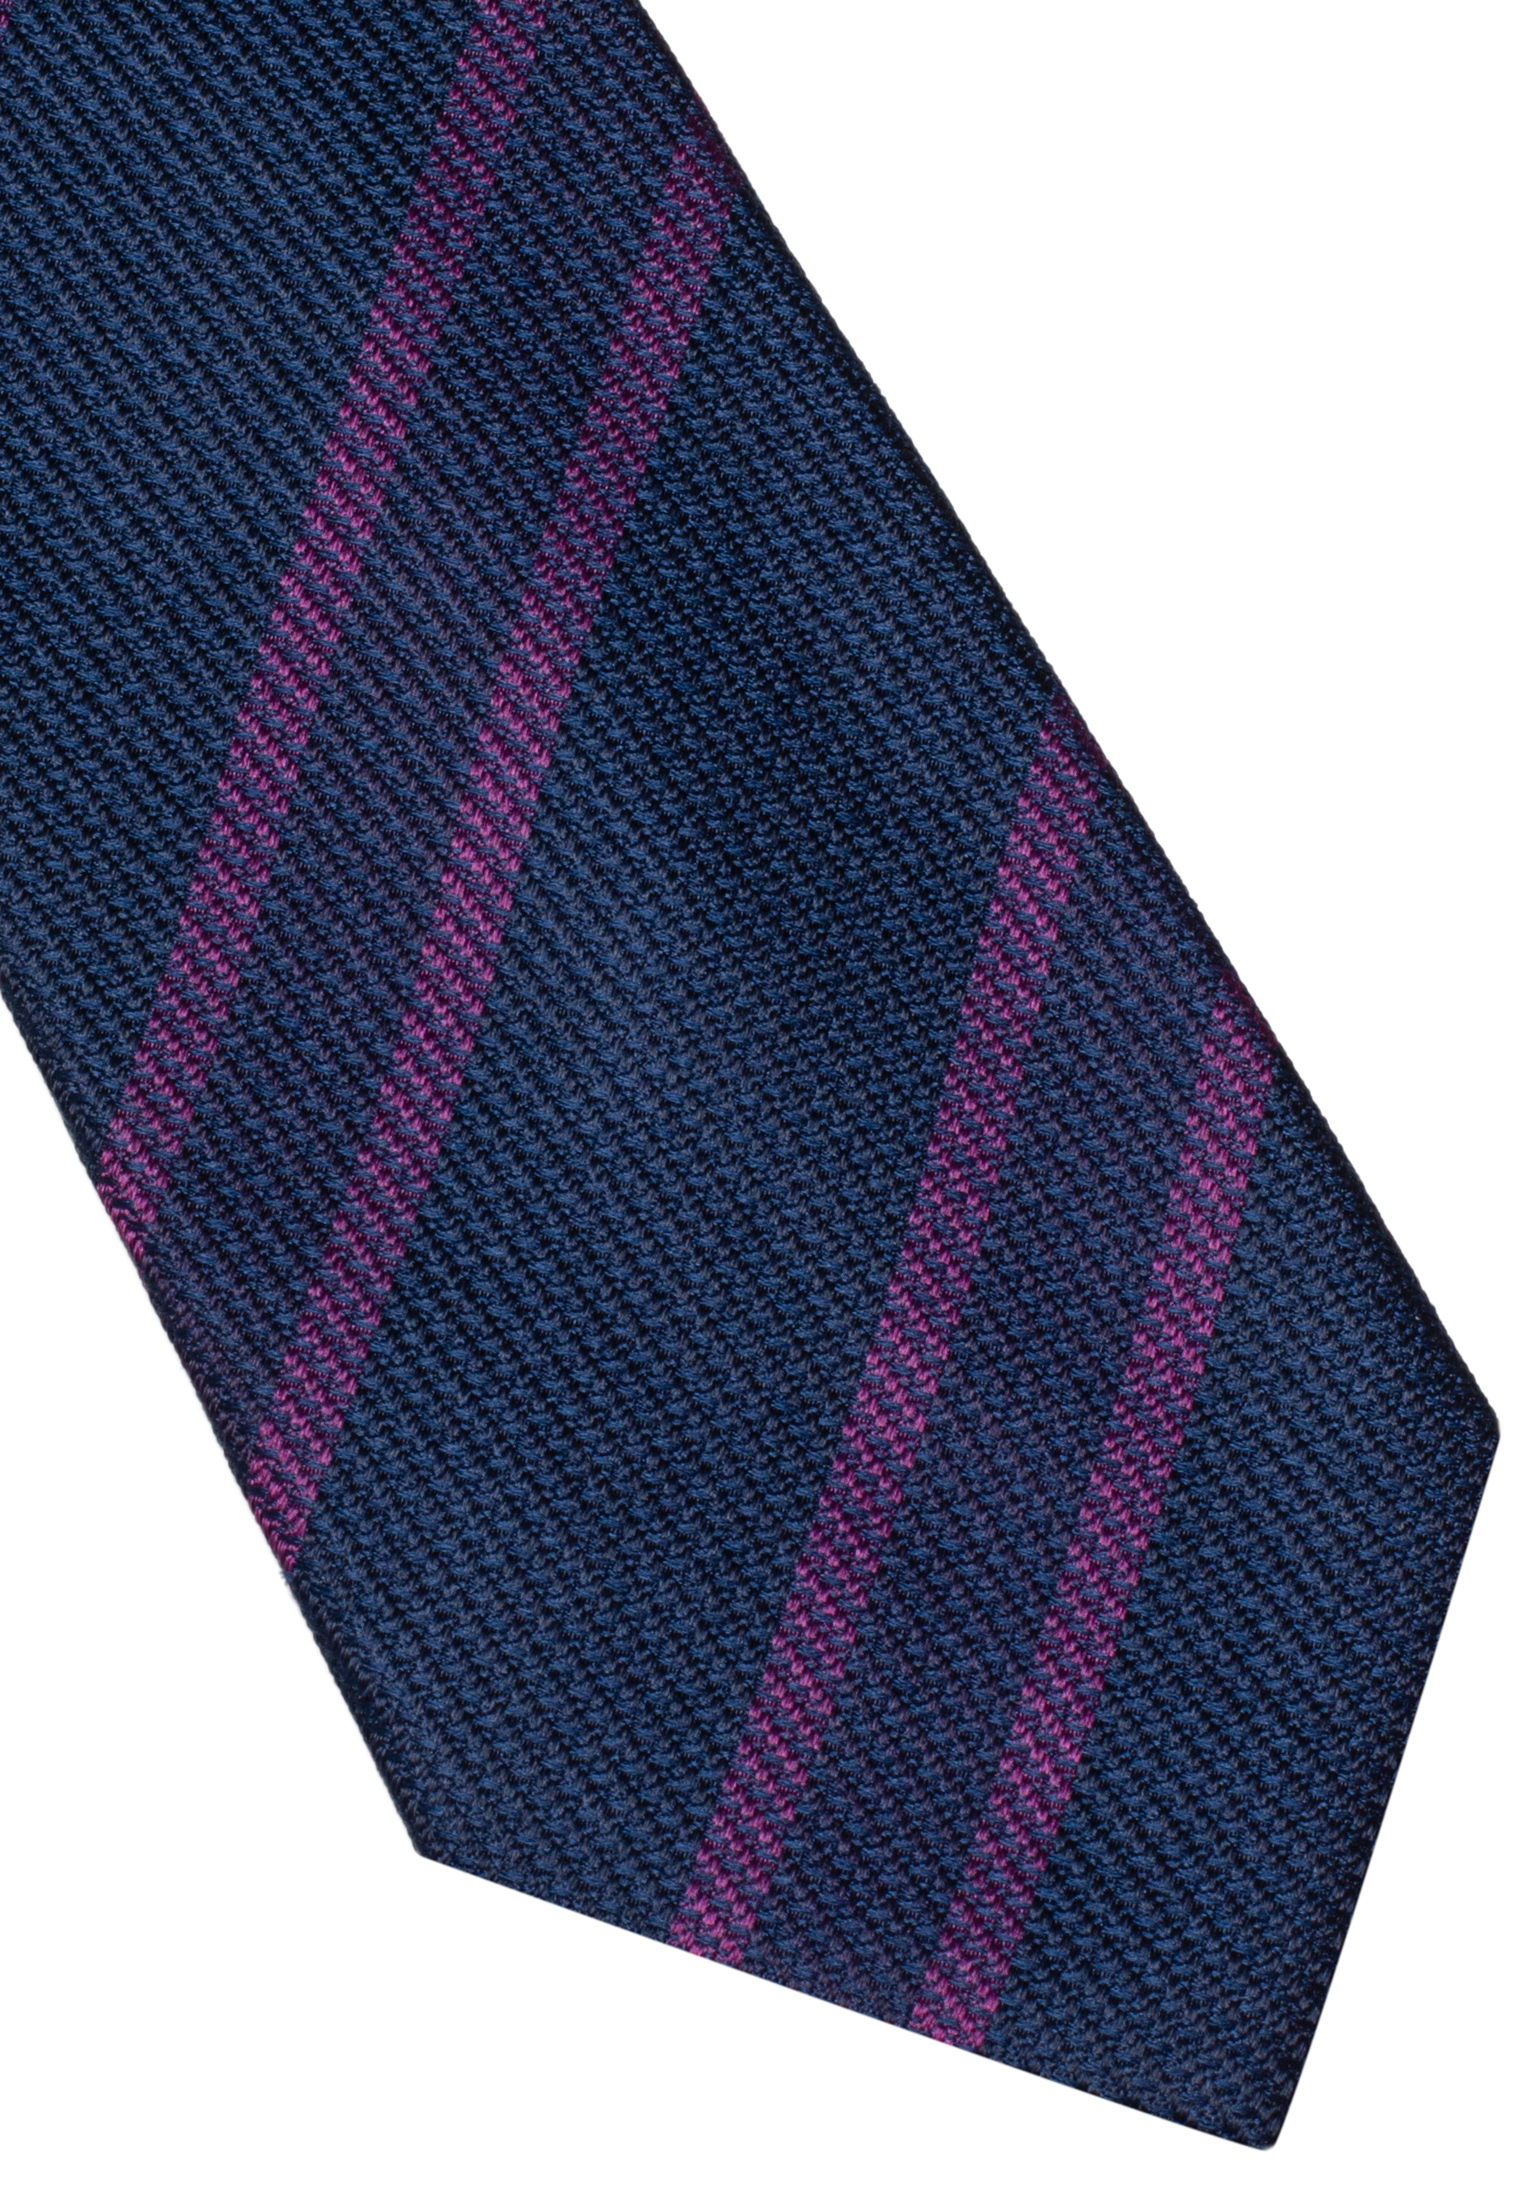 Krawatte in lila gestreift | 142 | 1AC00360-09-01-142 lila 